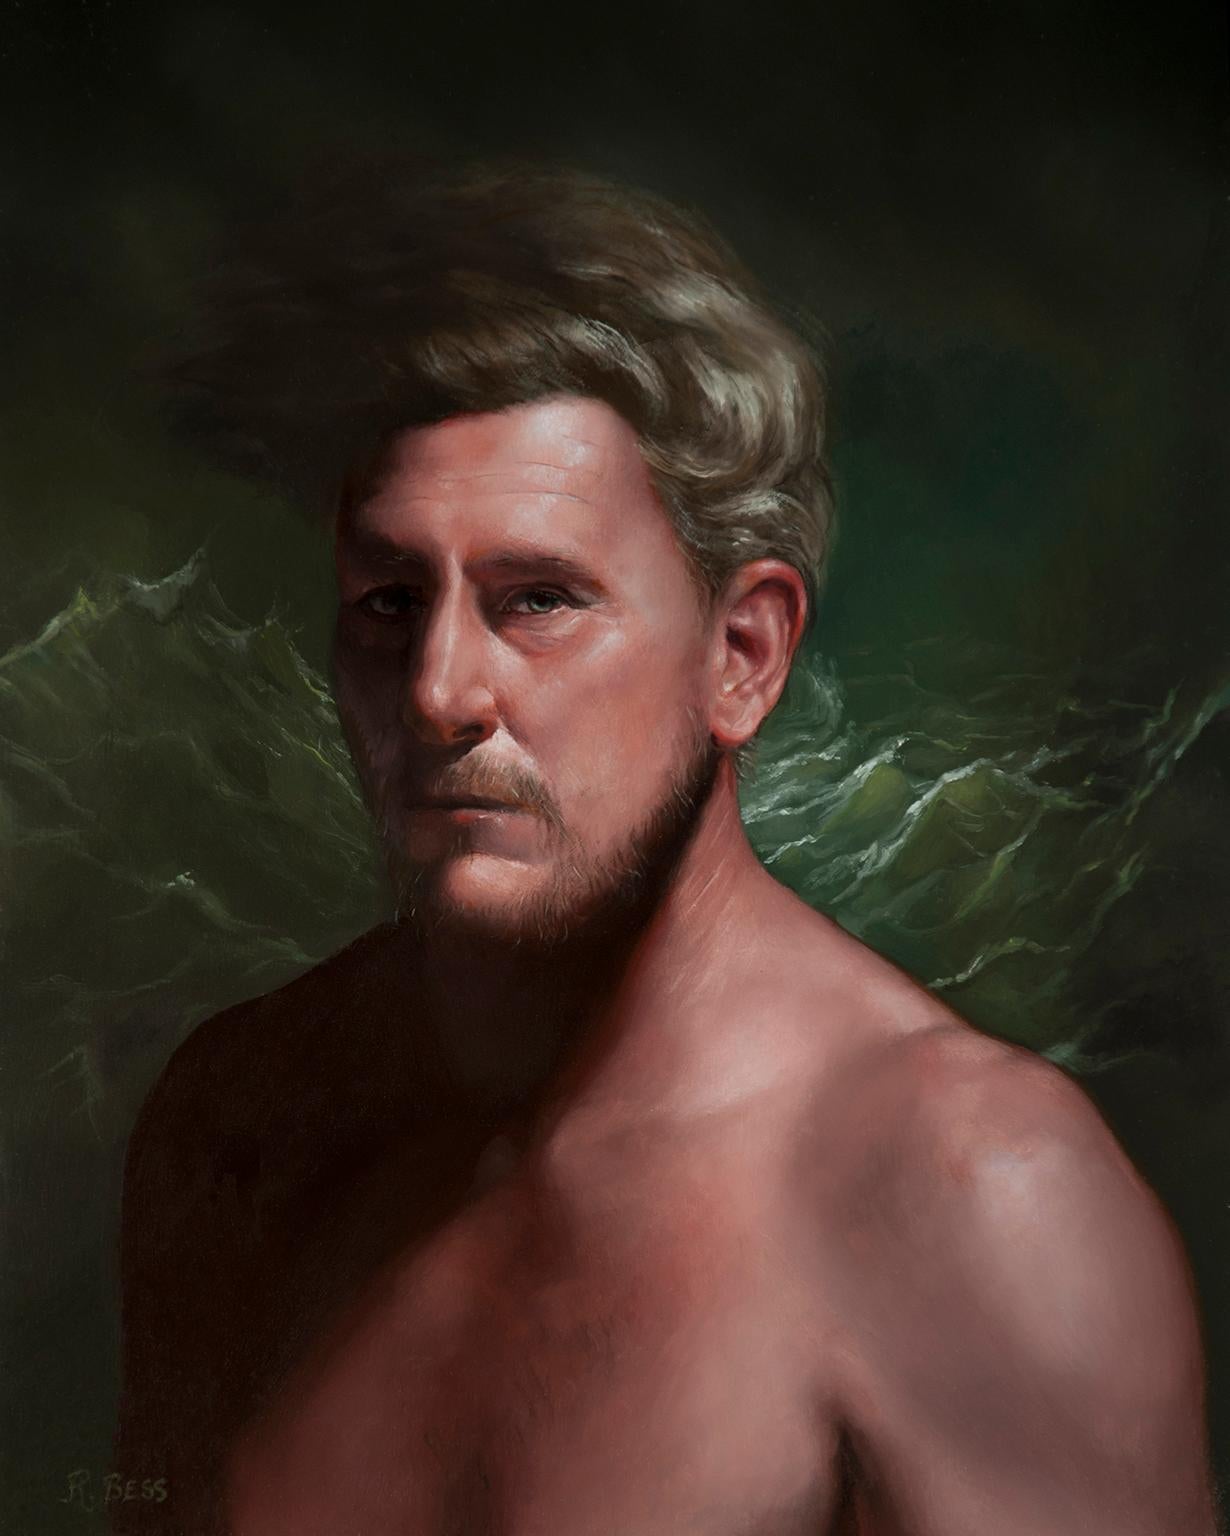 Portrait à l'huile « Rise and Fall » (Rise et automne) - Peinture d'un blonde homme en train de faire des vagues océaniques